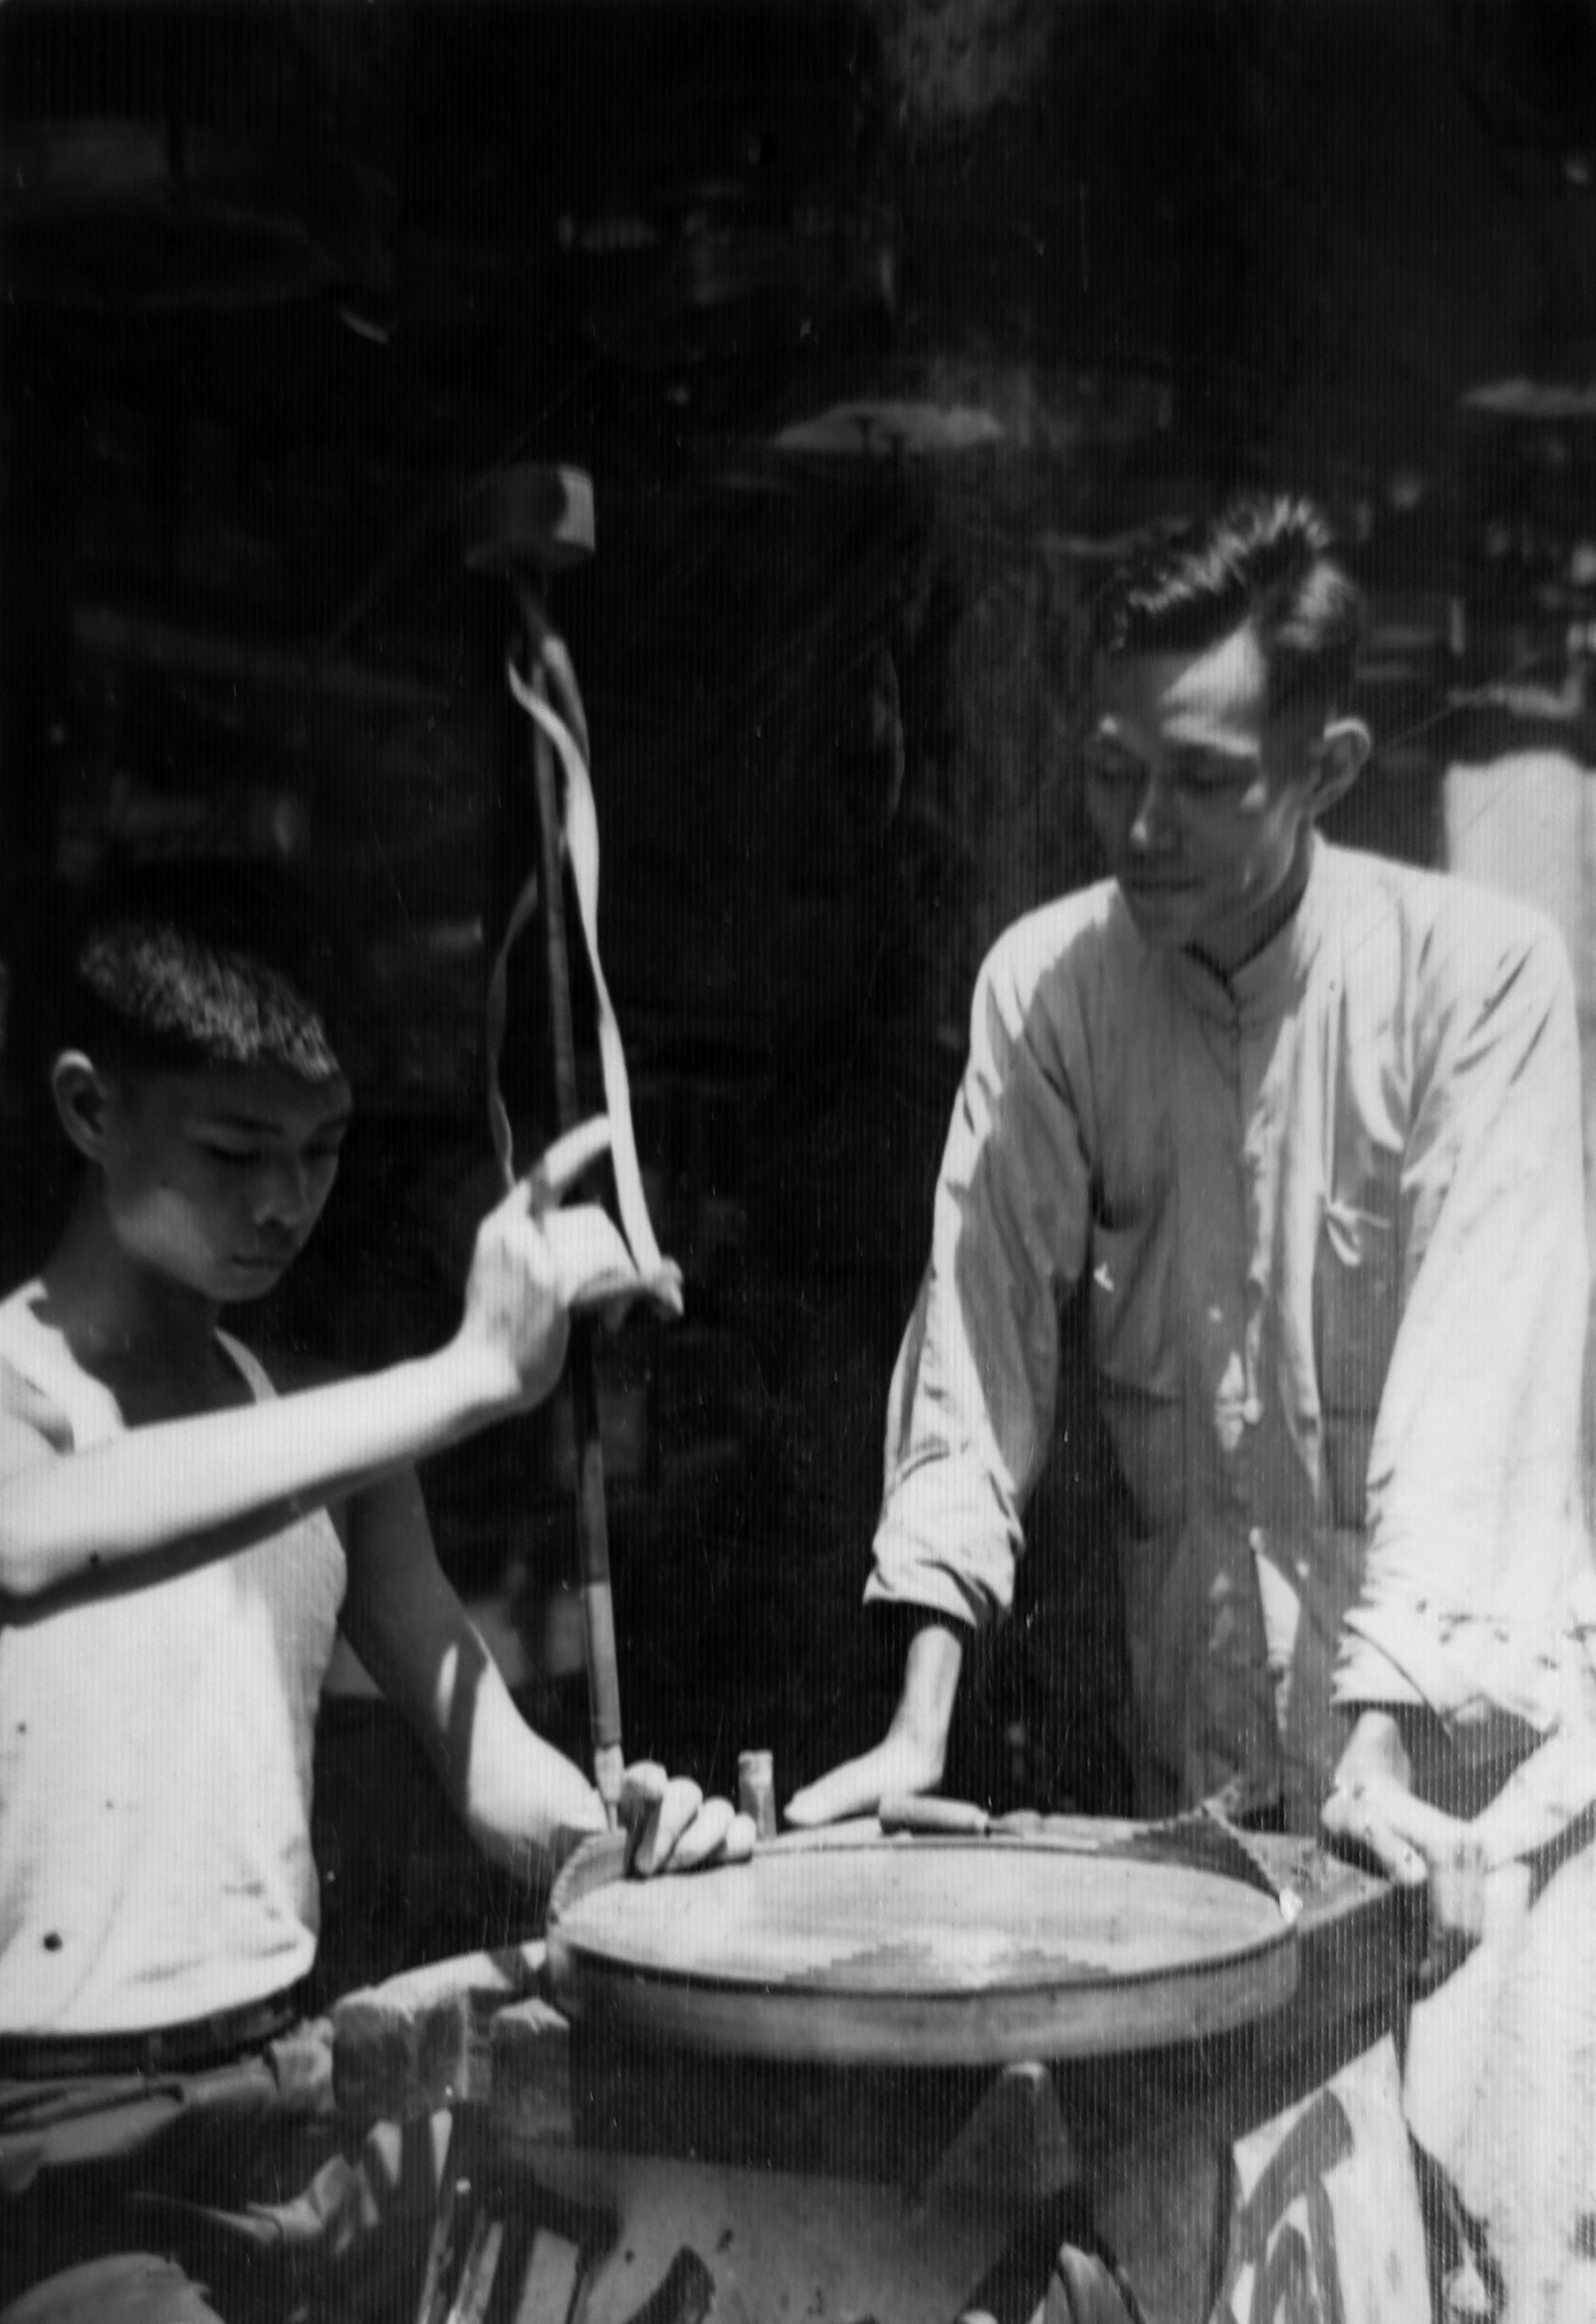 卓康師傅（右）正在指導手持鑽孔工具的徒弟陳樂財（左）製作鳥籠，約攝於1950年代末。圖片來源：陳樂財師傅提供。